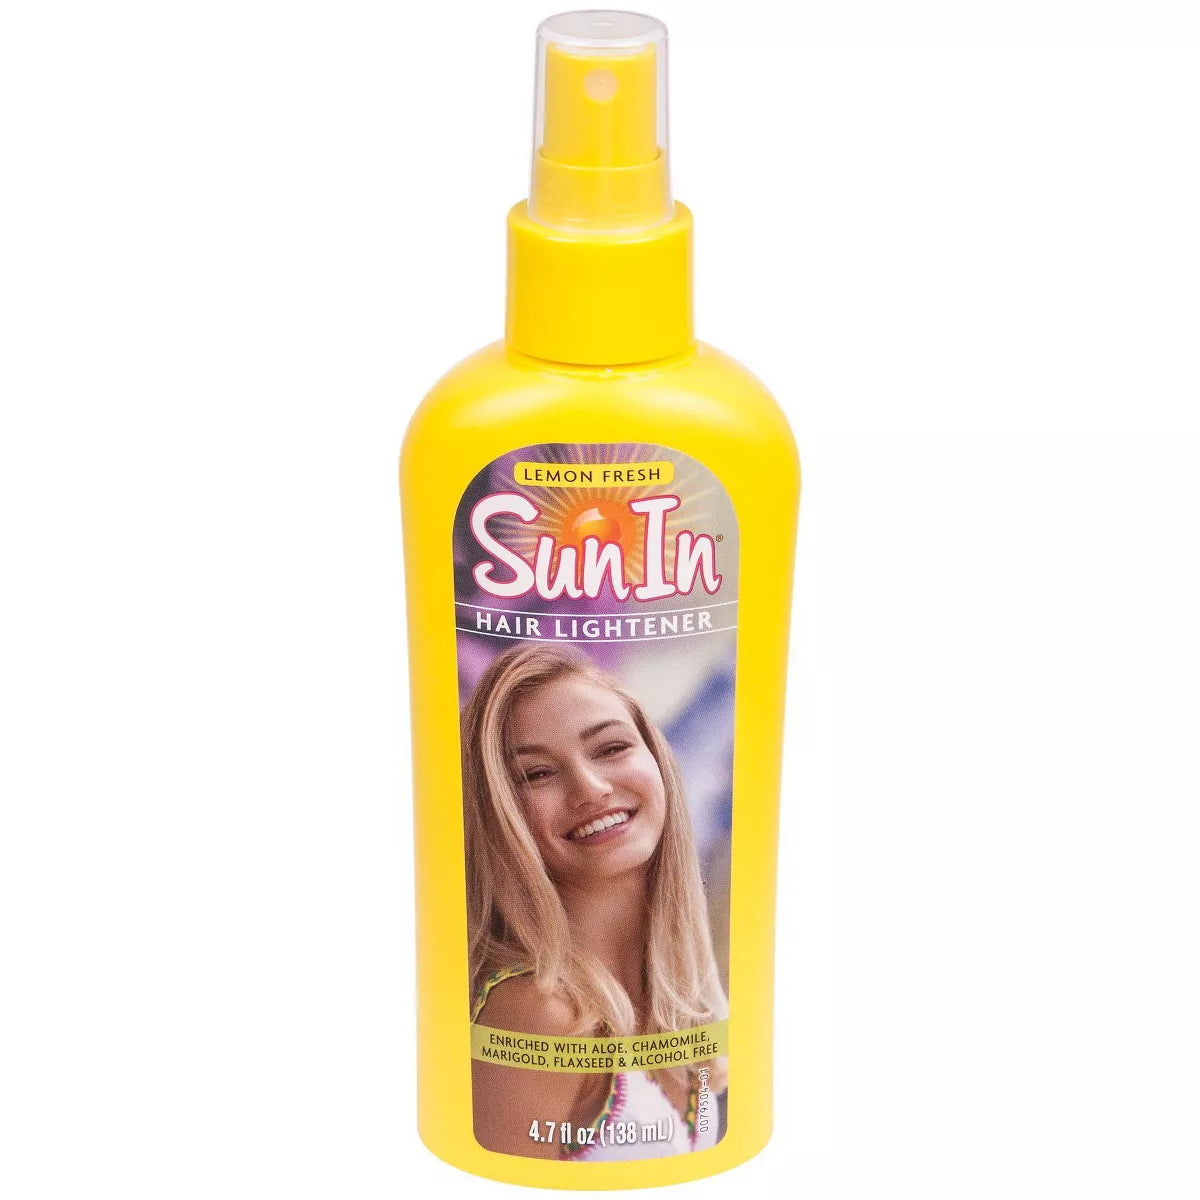 Sun In Lemon Fresh Hair Lightener 4.7oz